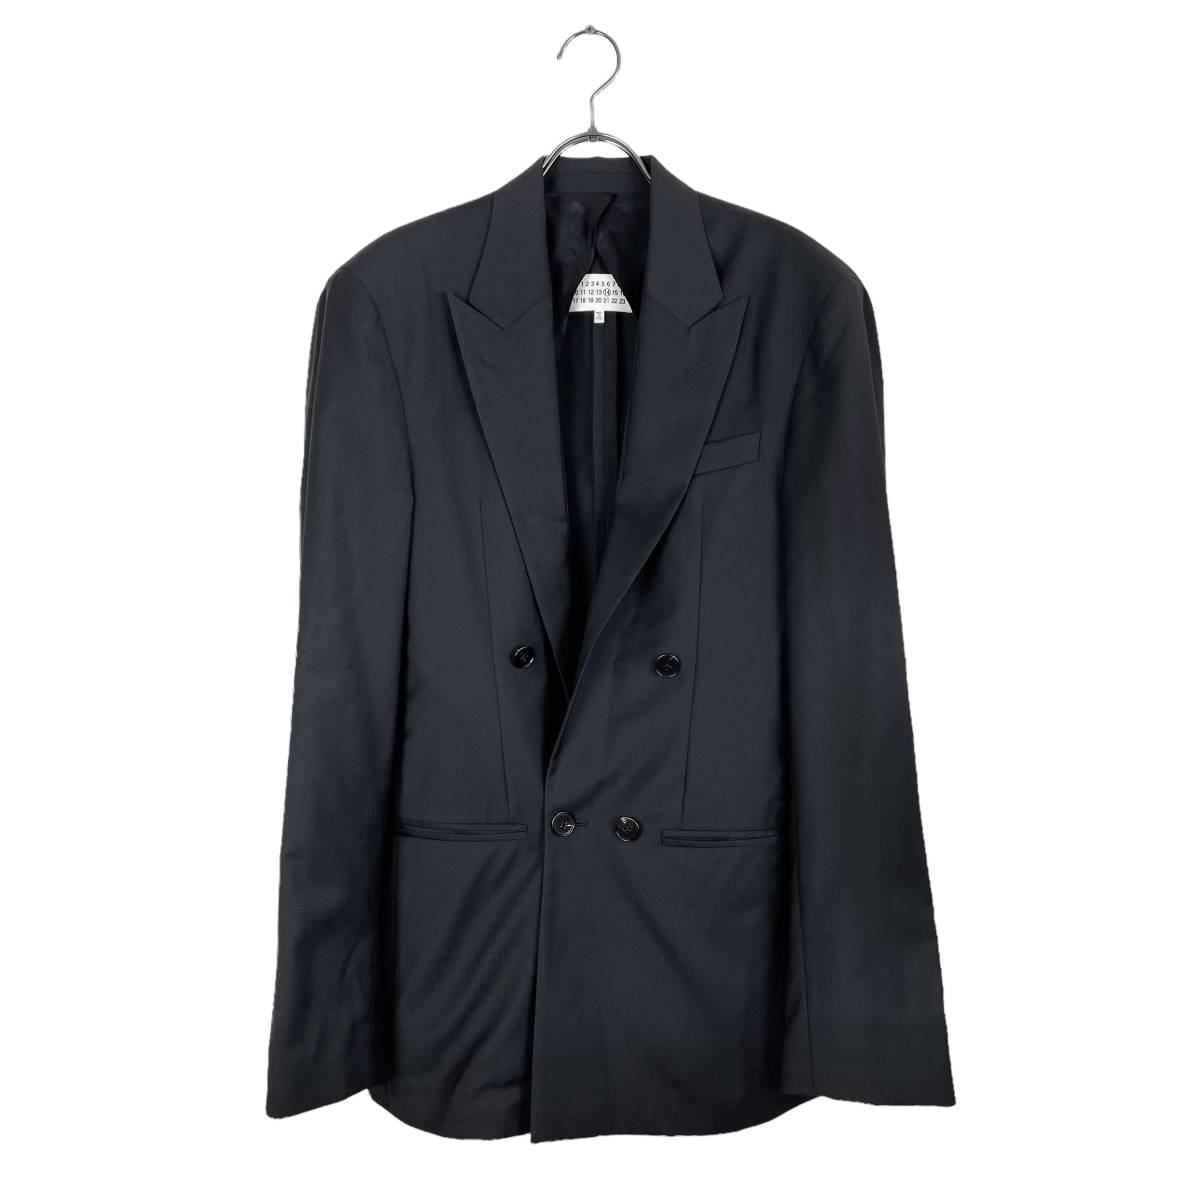 Maison Margiela(メゾン マルジェラ) tailored jacket 17AW (black)